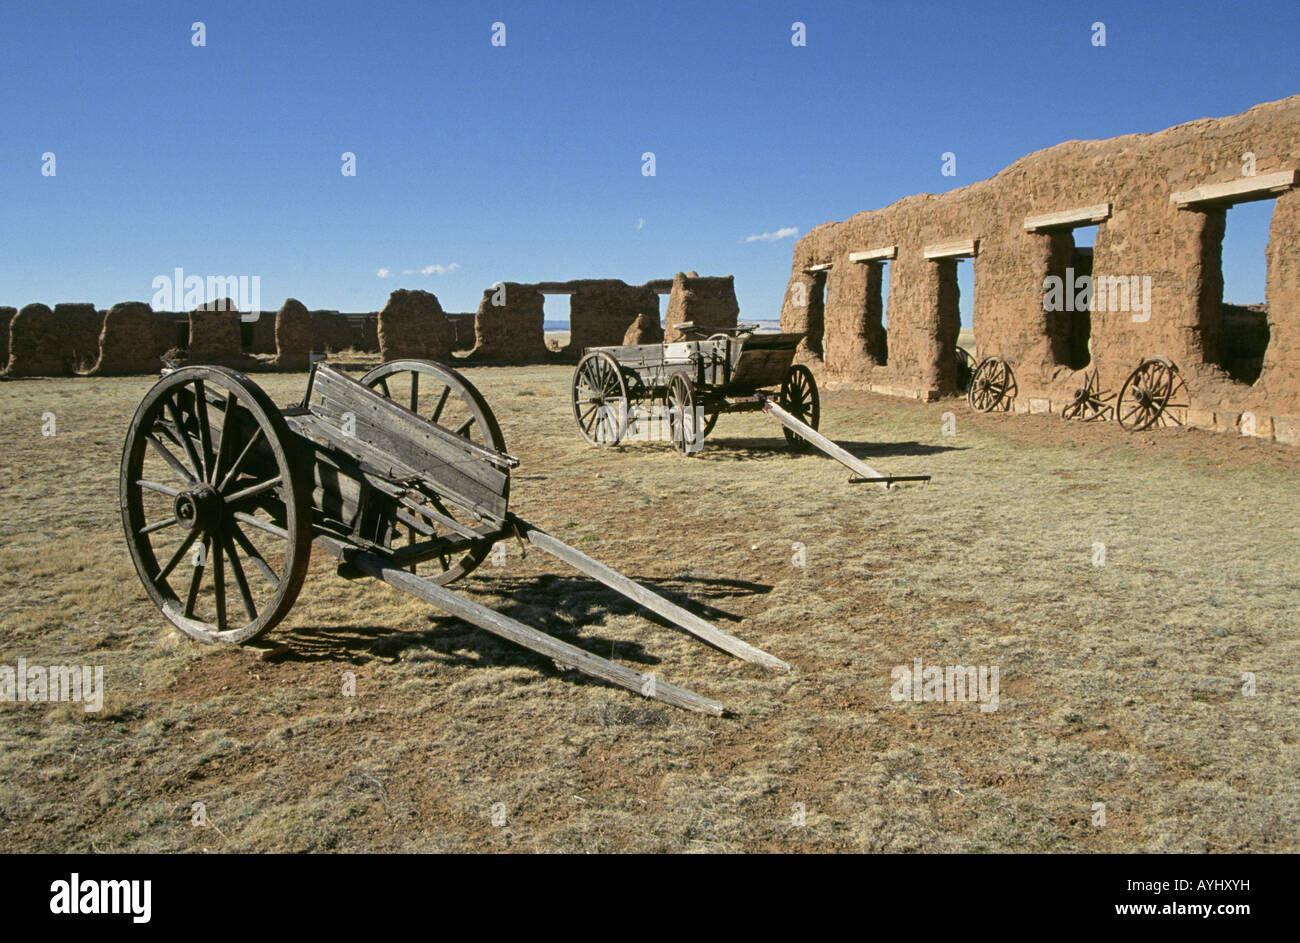 Une vue de la boue d'adobe walls of Old Fort Union européenne une guerre civile fort occupé par l'armée américaine Calvalry Banque D'Images